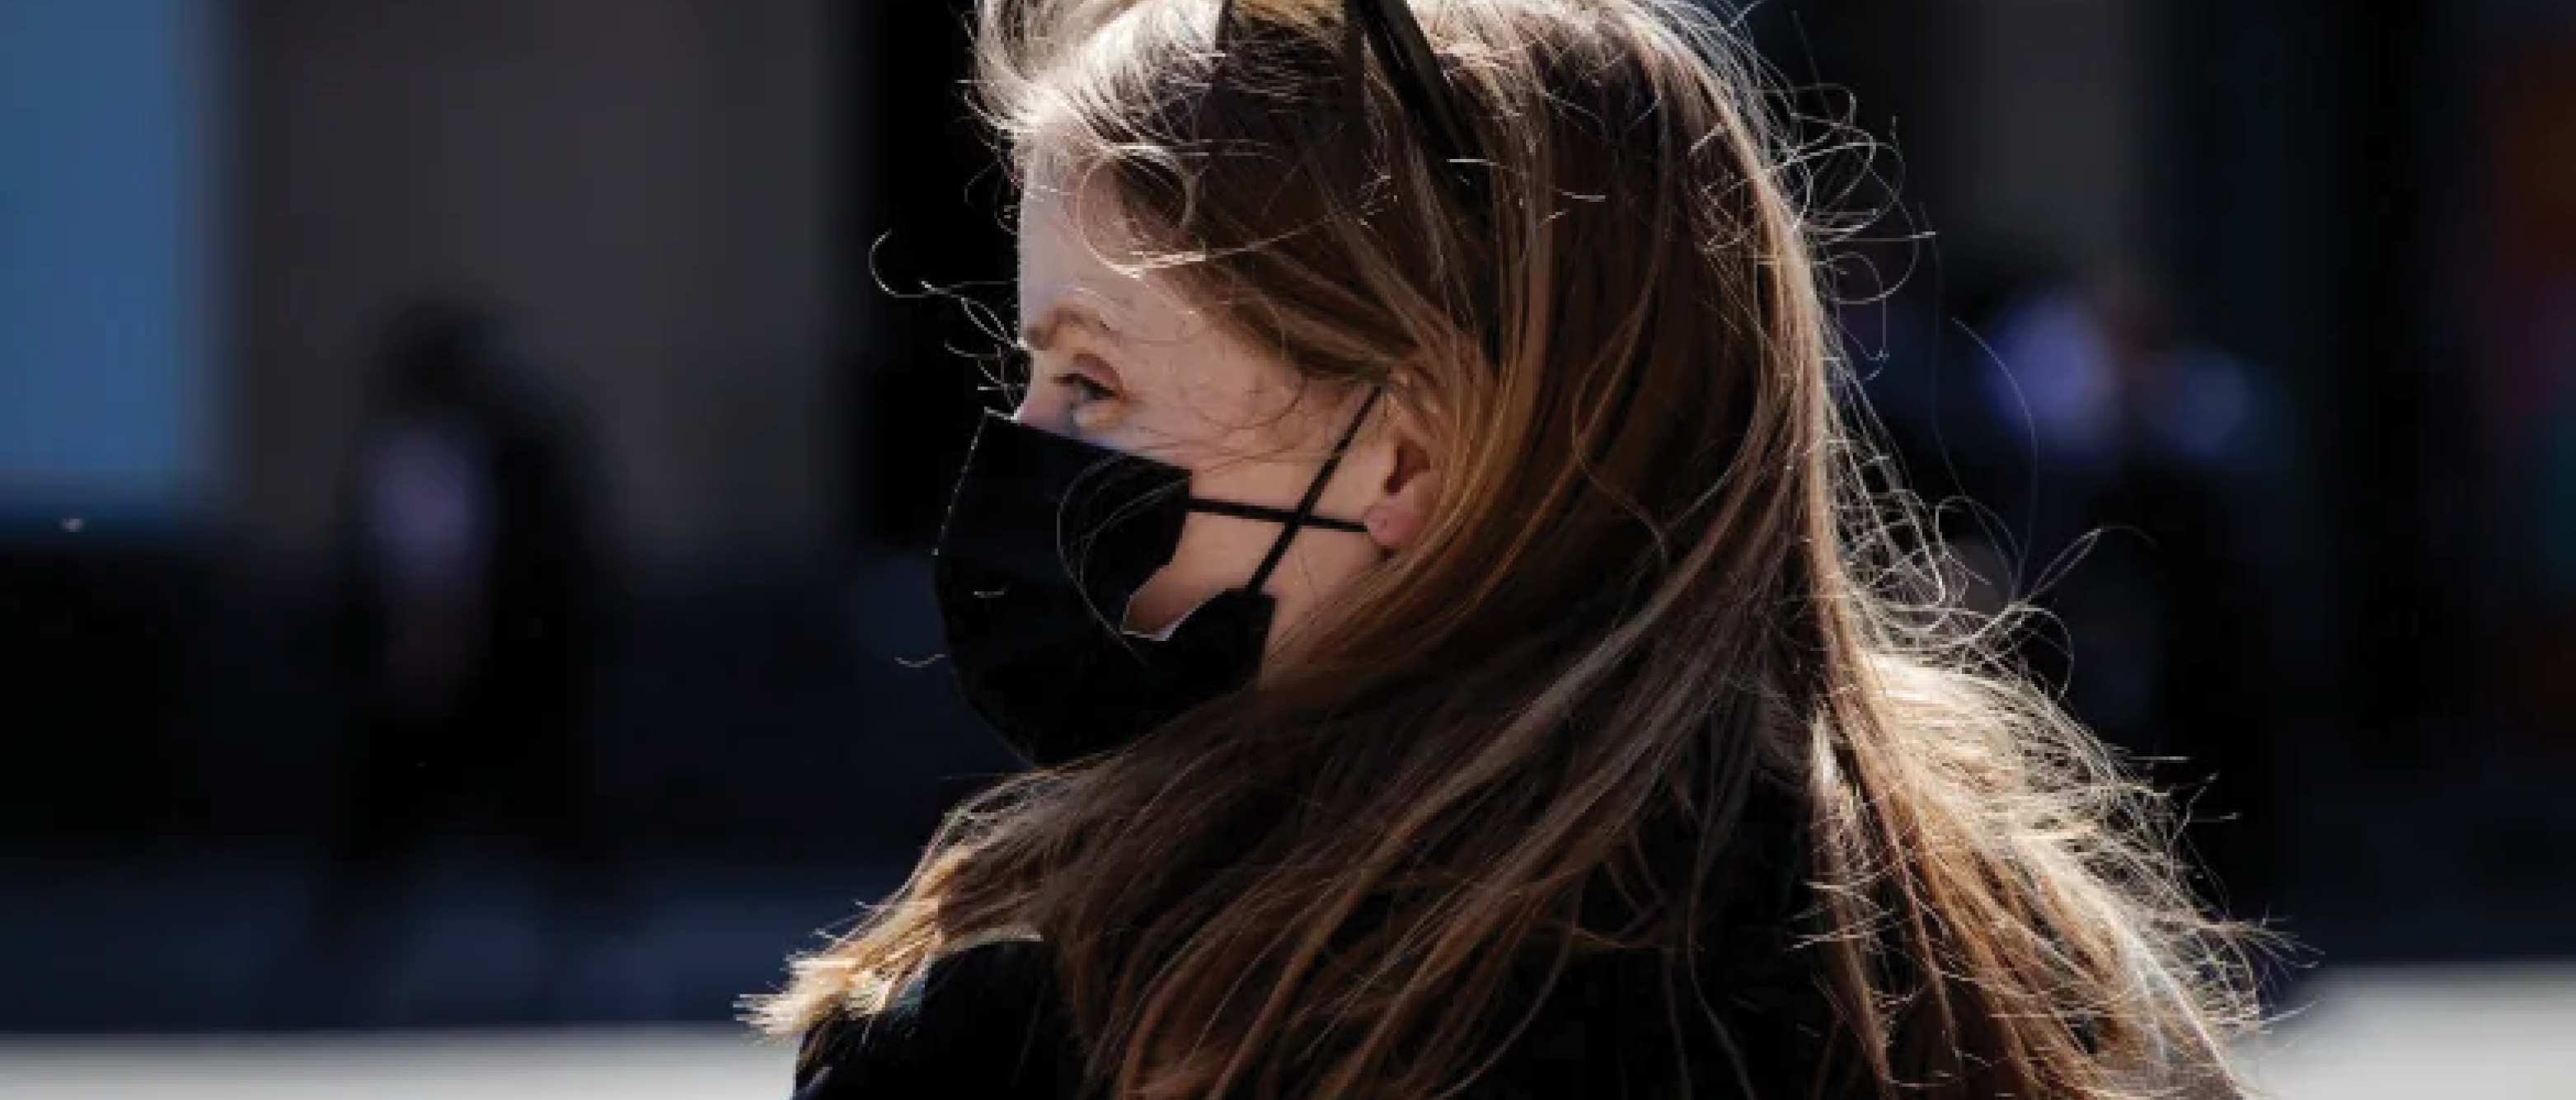 Profile of woman wearing a black mask. Image: CBC.